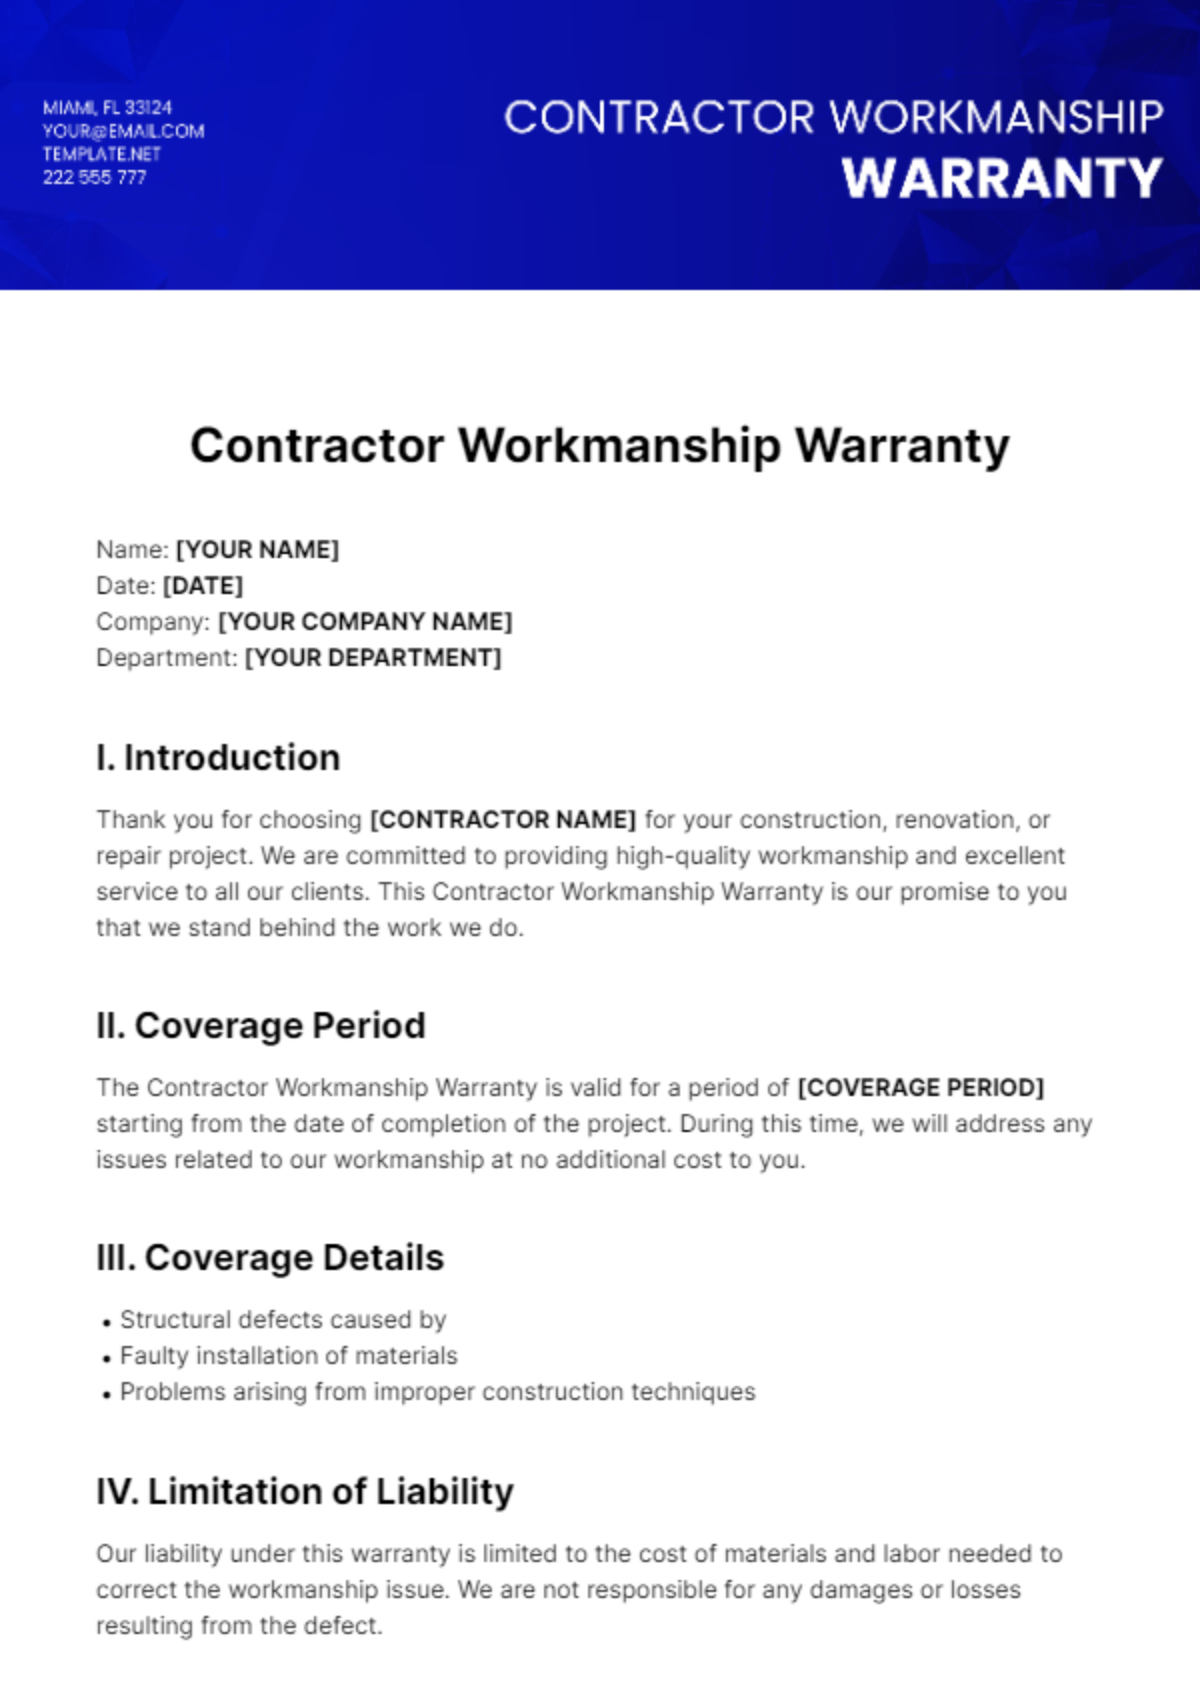 Contractor Workmanship Warranty Template